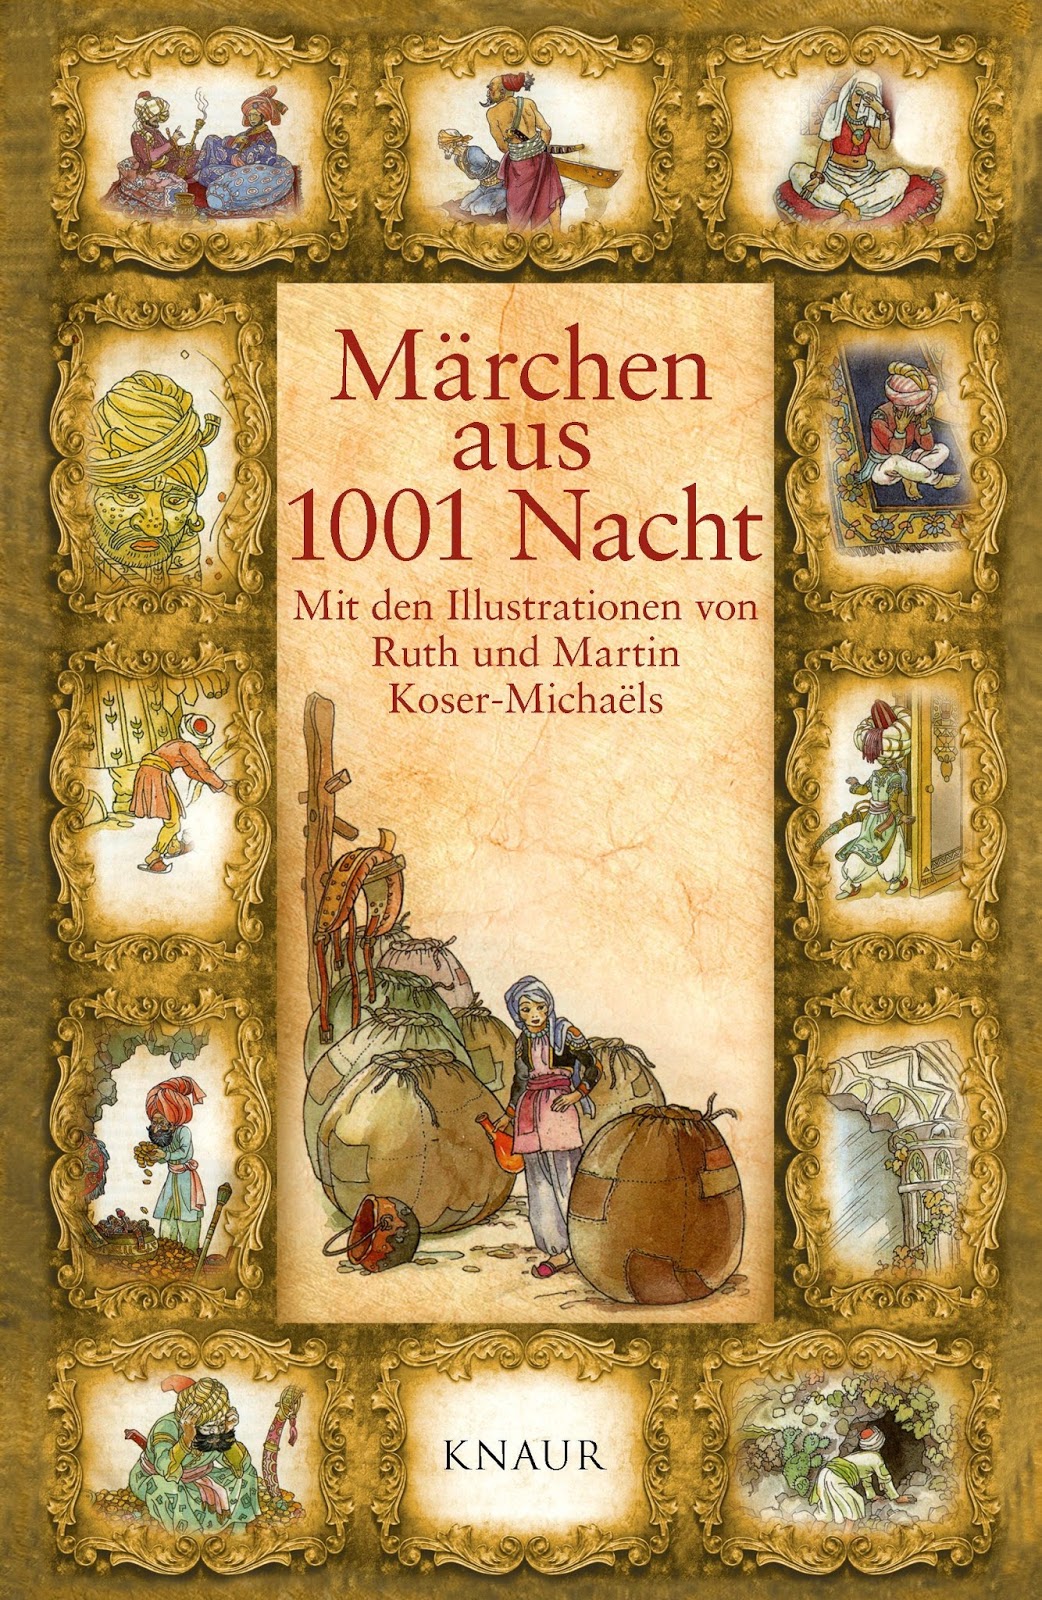 Maries Bücherwelt ... ♡ : [Rezension] Märchen aus 1001 Nacht